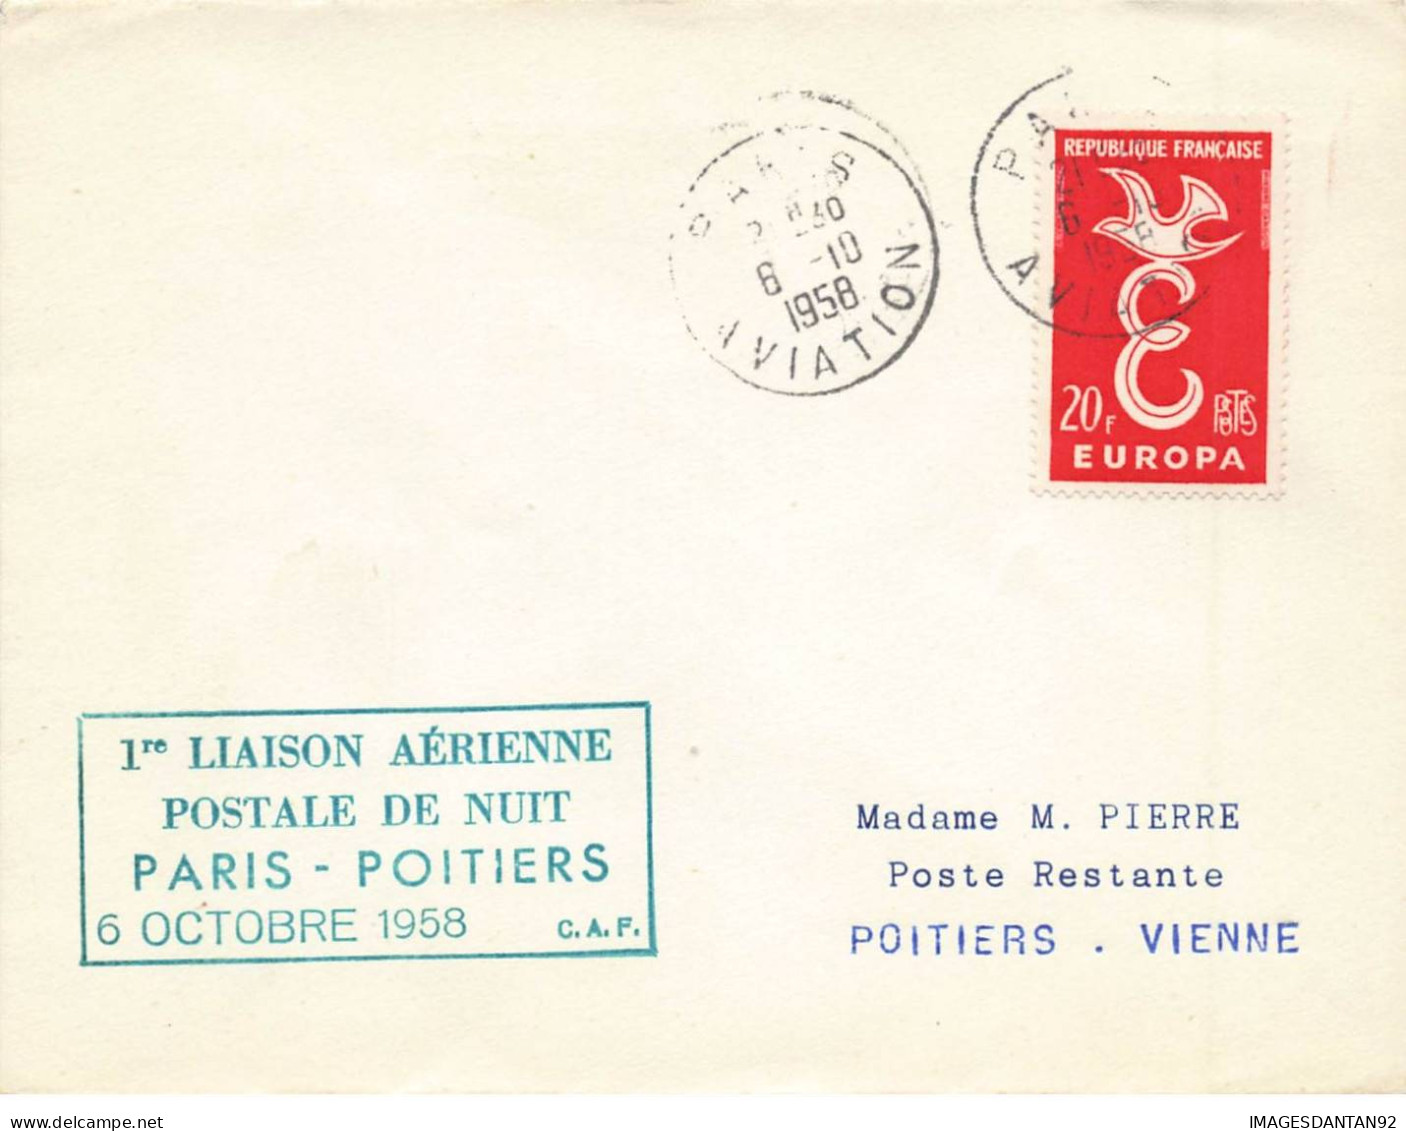 FRANCE #36361 1 ERE LIAISON AERIENNE DE NUIT PARIS POITIERS 1958 - Covers & Documents